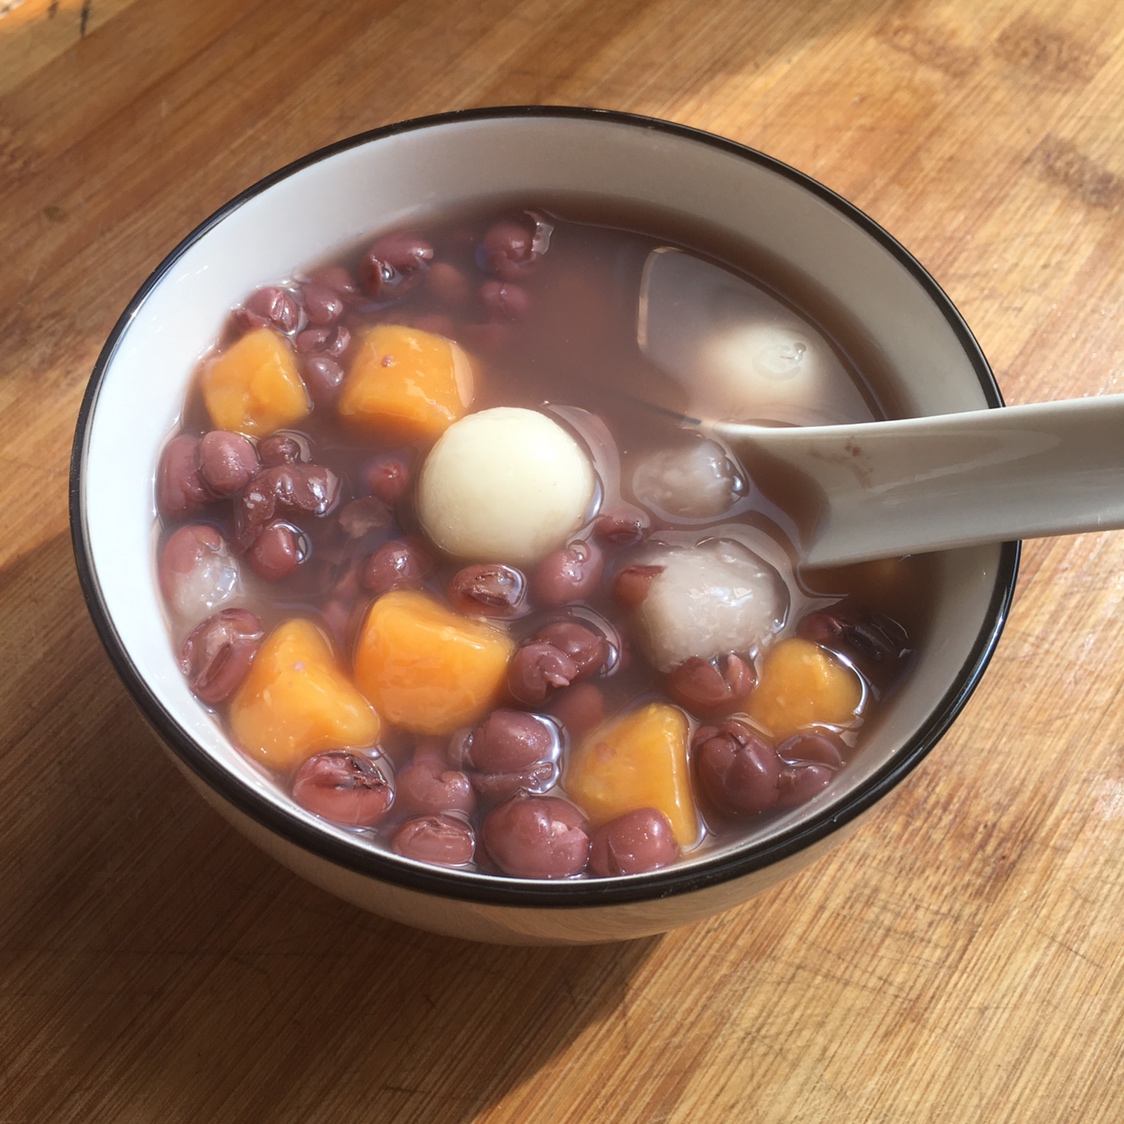 芋圆小汤圆葡萄干红豆沙汤的做法